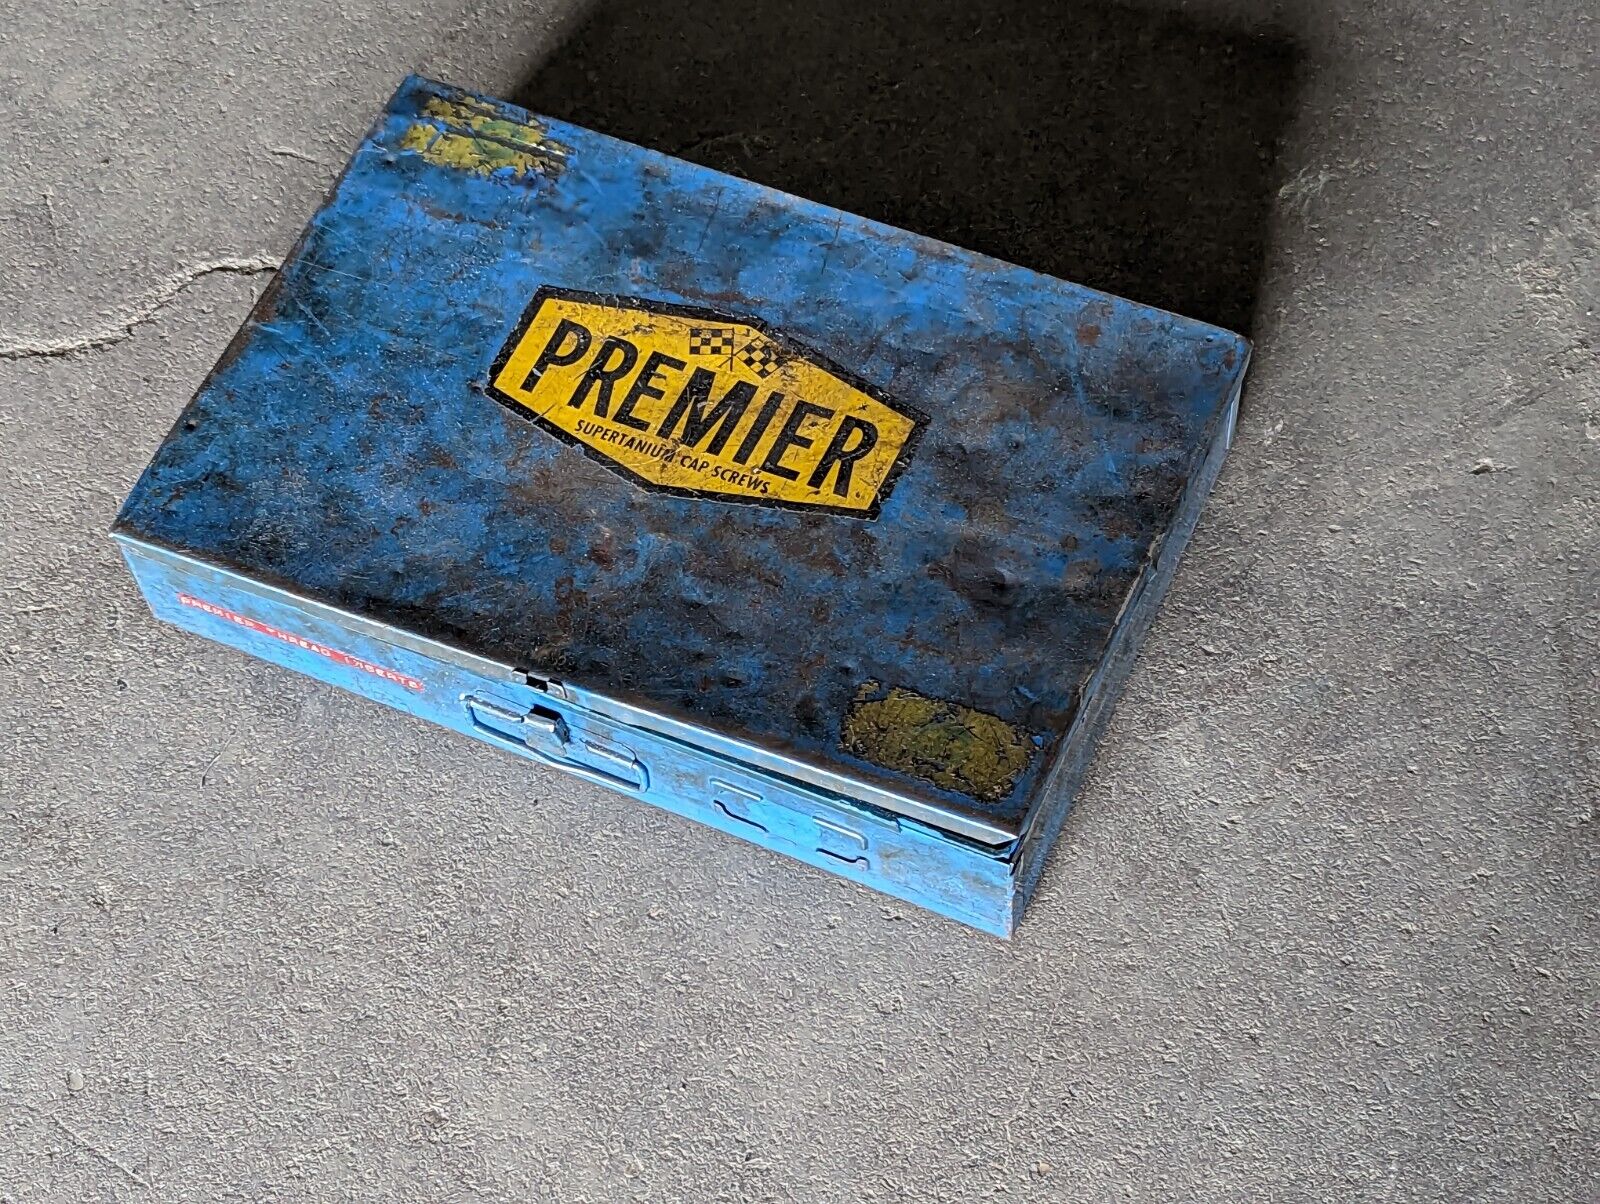 Vintage, distressed Premier Supertanium Cap Screws metal box with contents